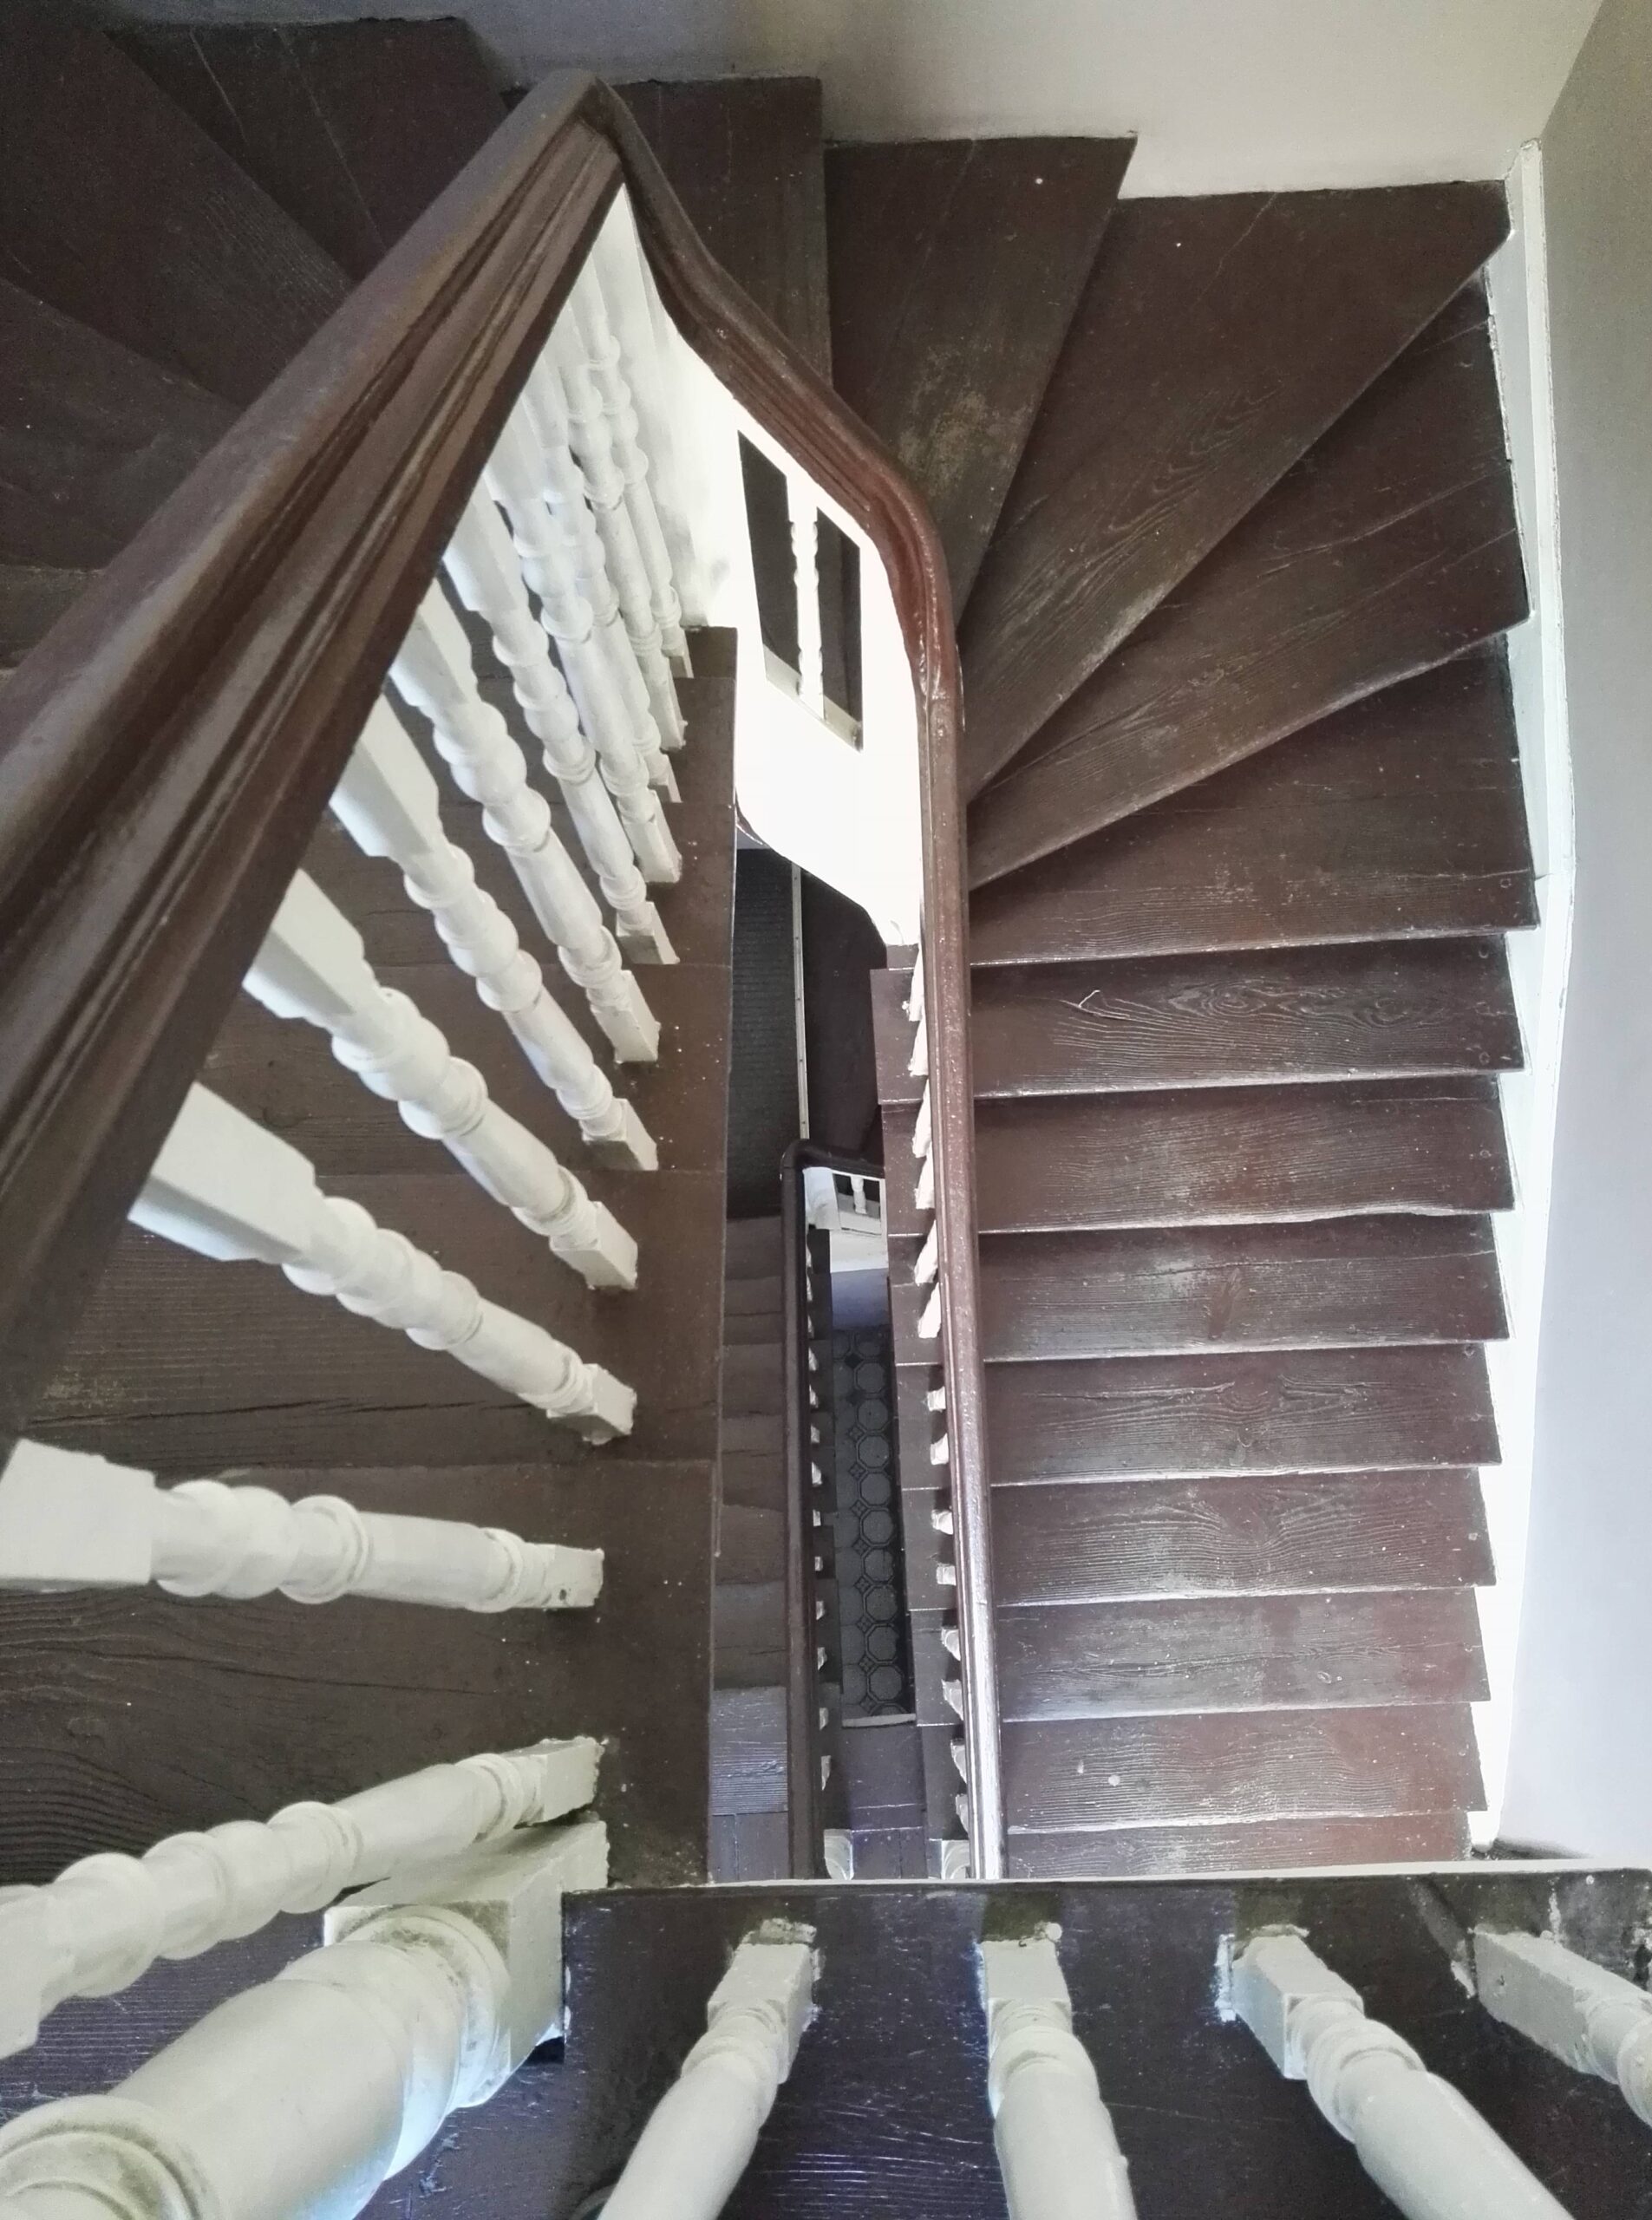 Klatka schodowa. Drewniane schody i balustrada. Widok z ostatniego piętra. Fot. Martyna Leciak 2022 r., źródło: Res in Ornamento II.